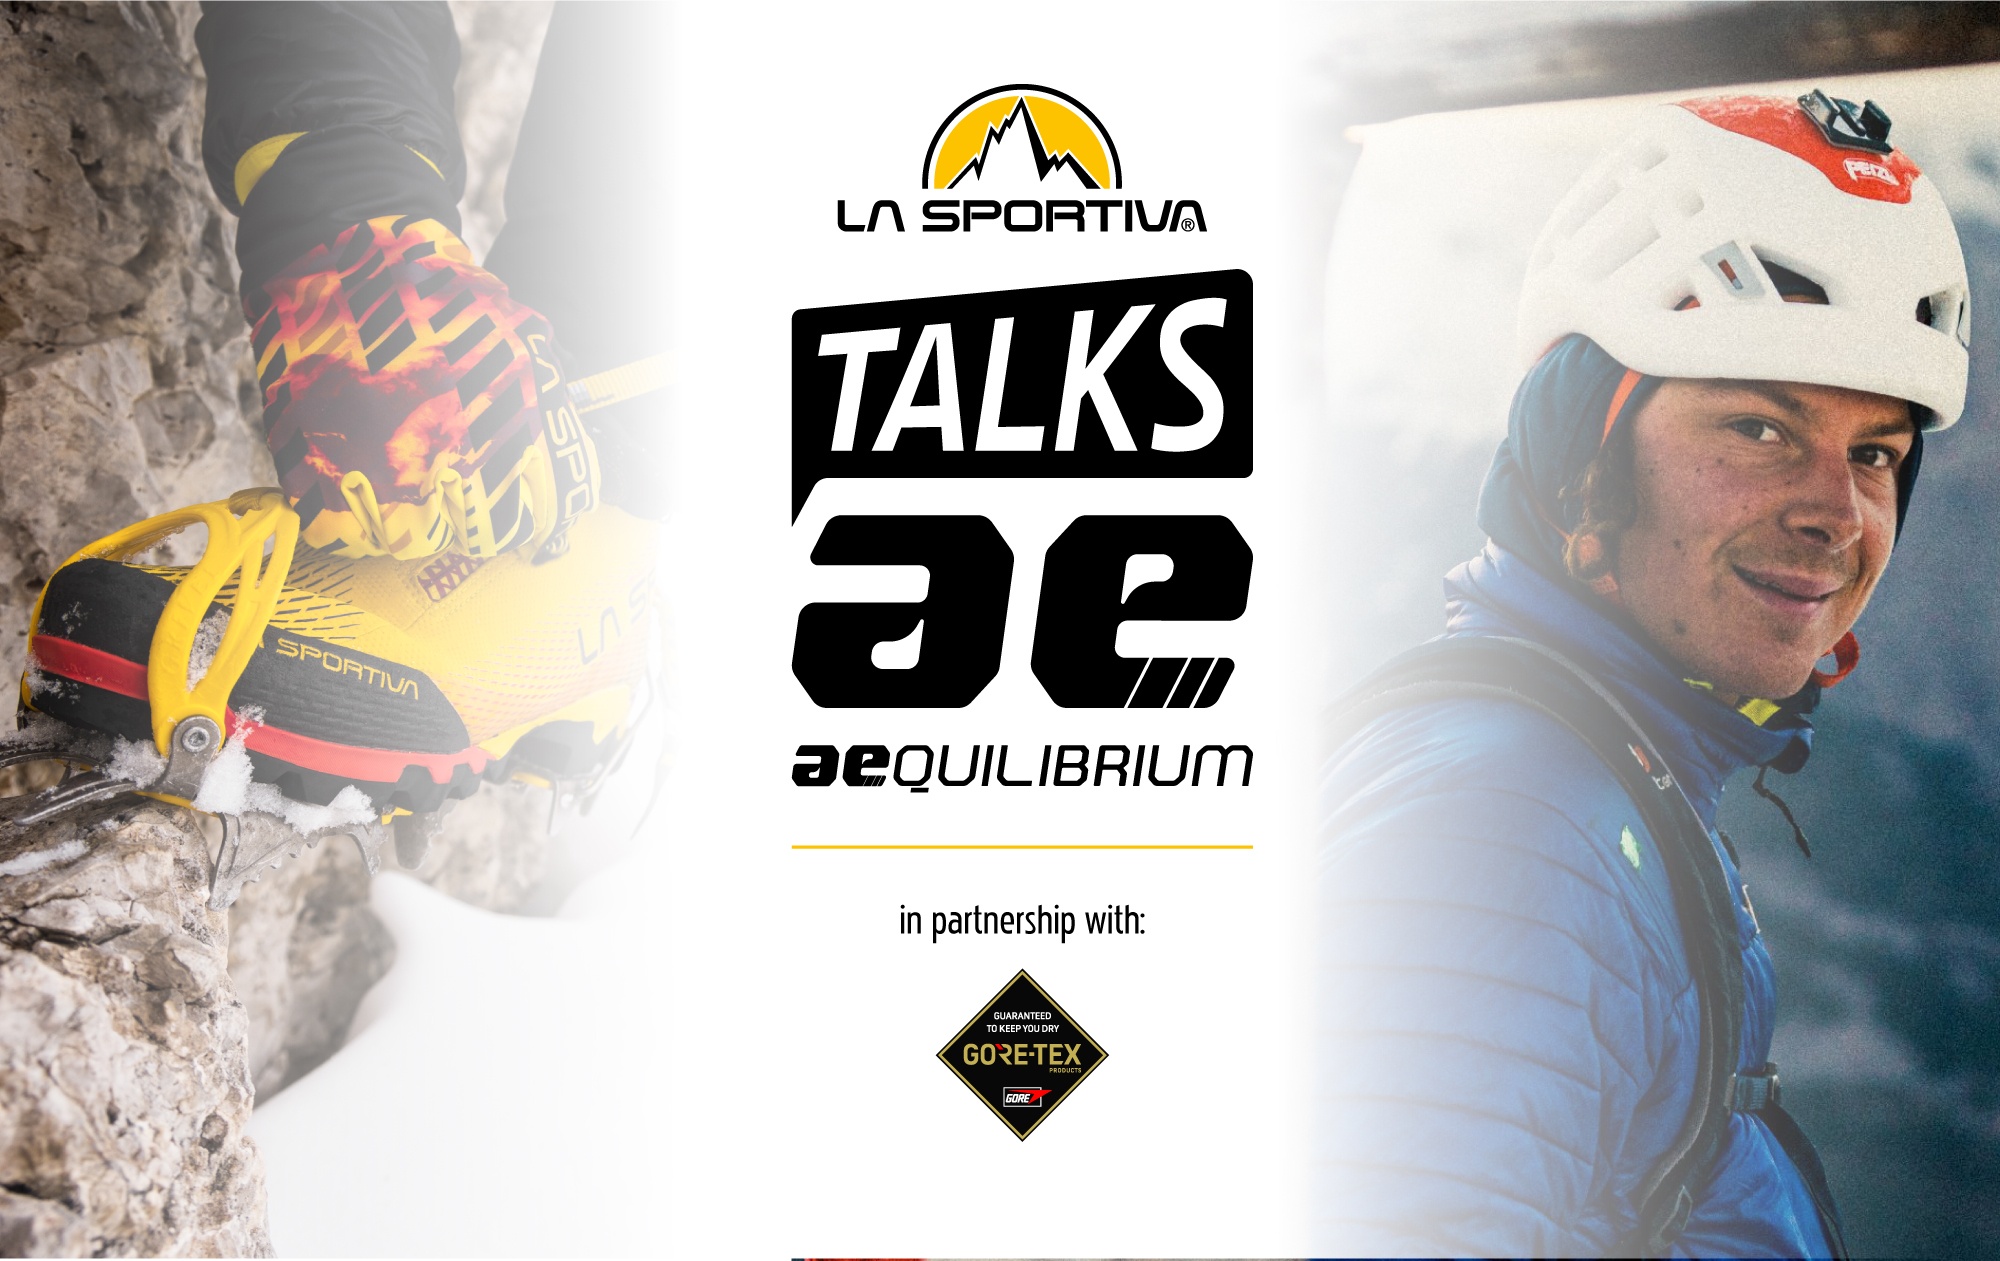 Event: La Sportiva Talk